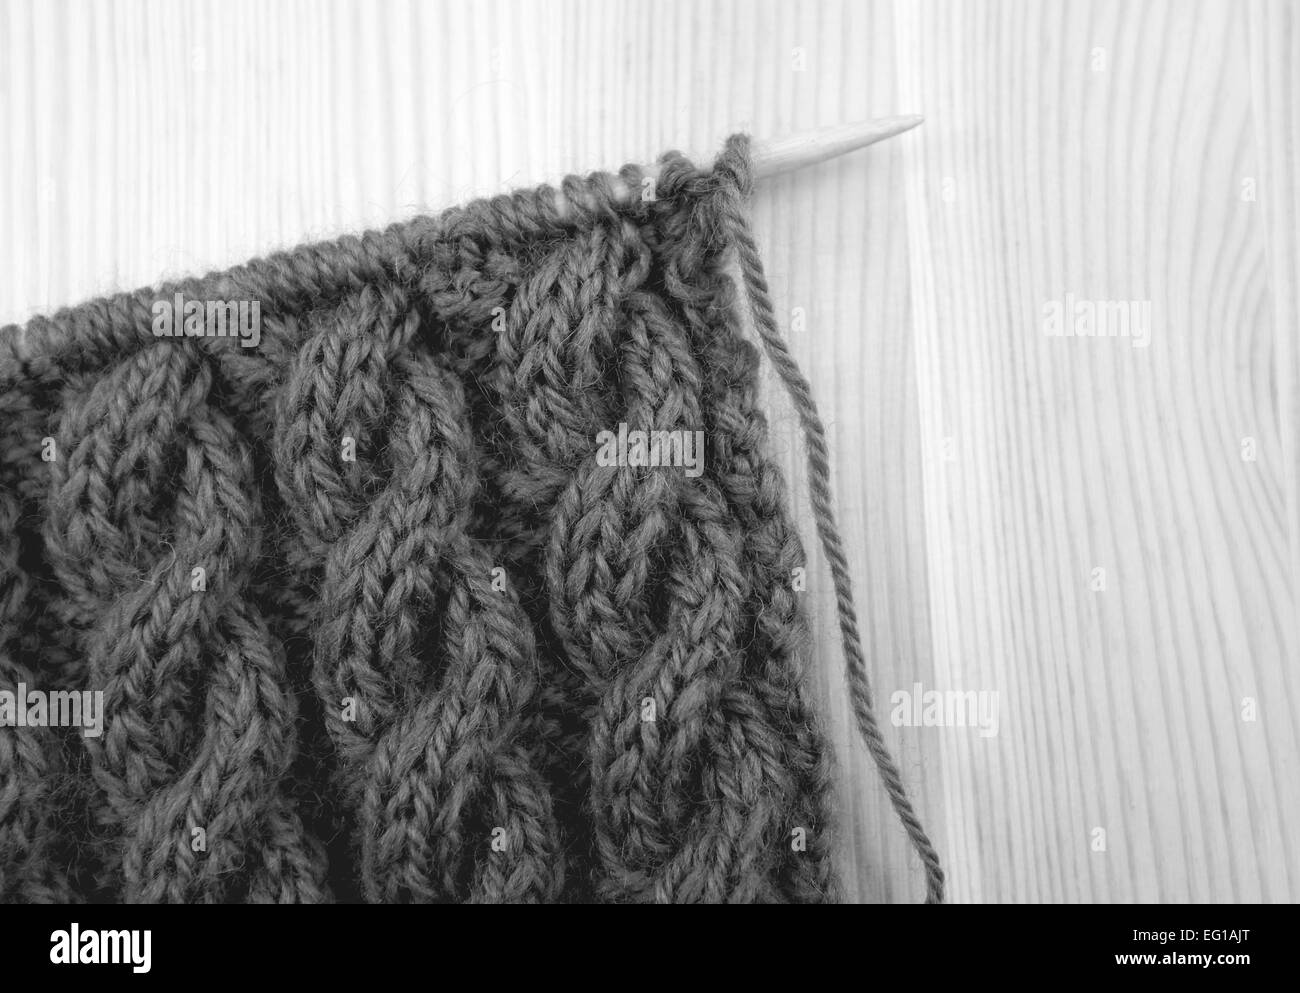 Gewickelte Seil Kabel stricken Masche auf der Nadel, auf einem hölzernen Hintergrund - monochrome Verarbeitung Stockfoto